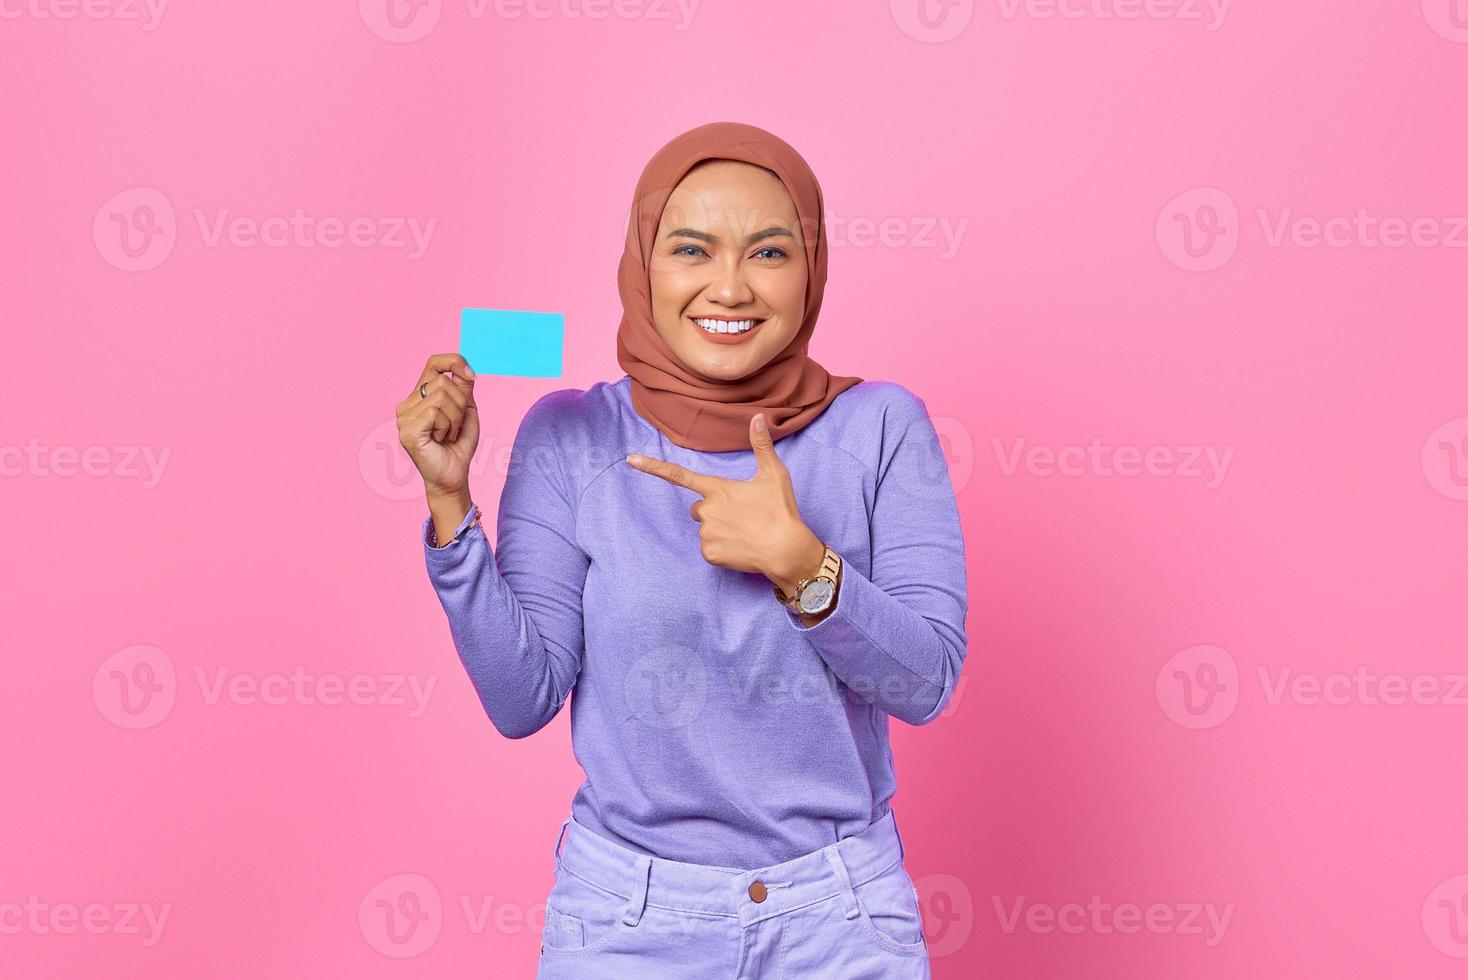 Glimlachende jonge Aziatische vrouw wijzende vinger naar creditcard op roze achtergrond foto